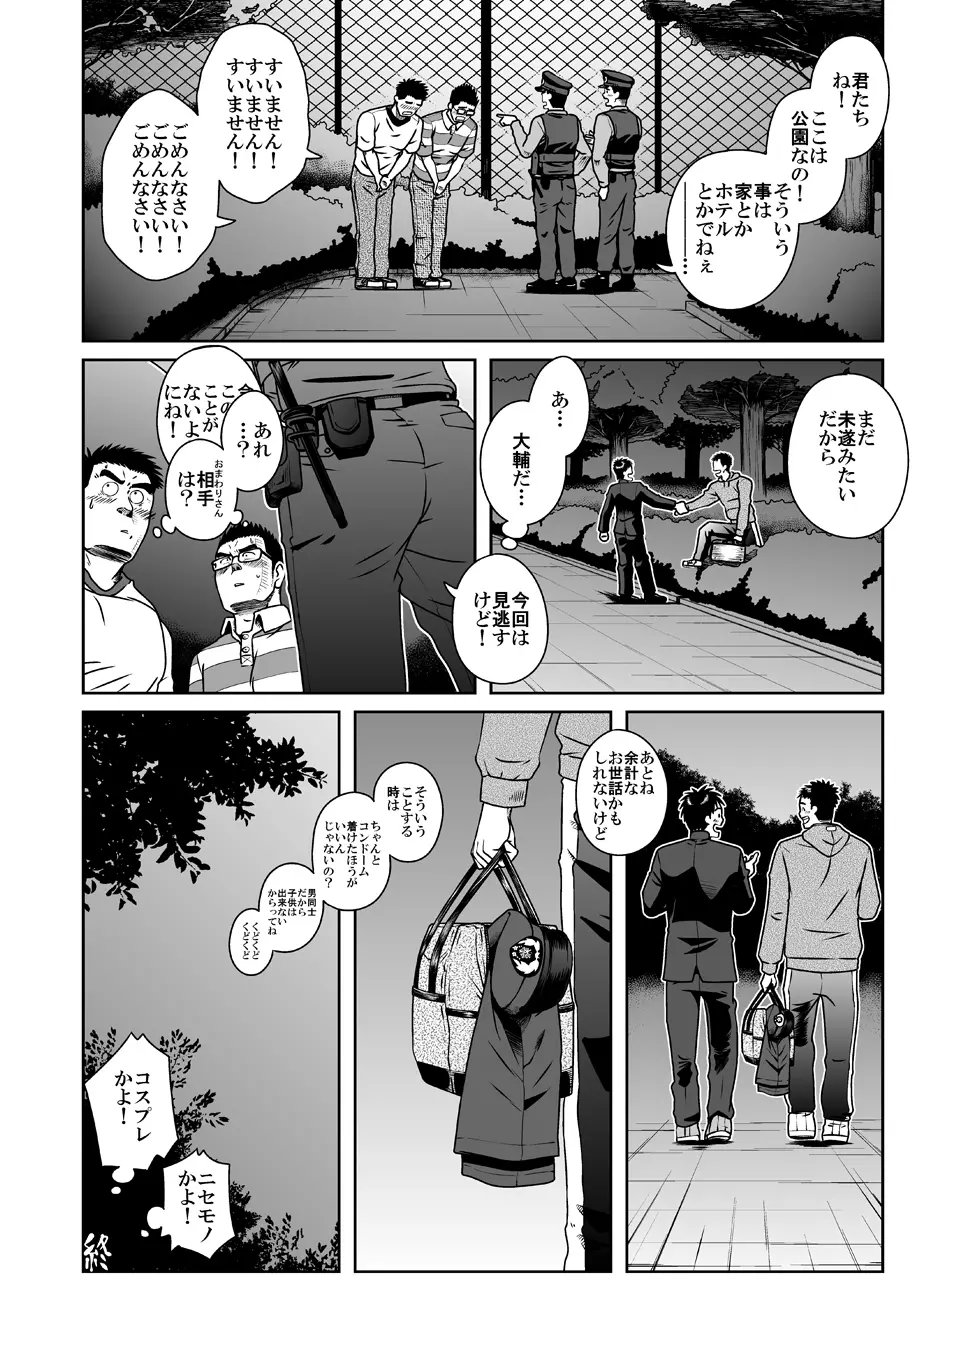 拓ヒラク再録集 まとめ! - page40